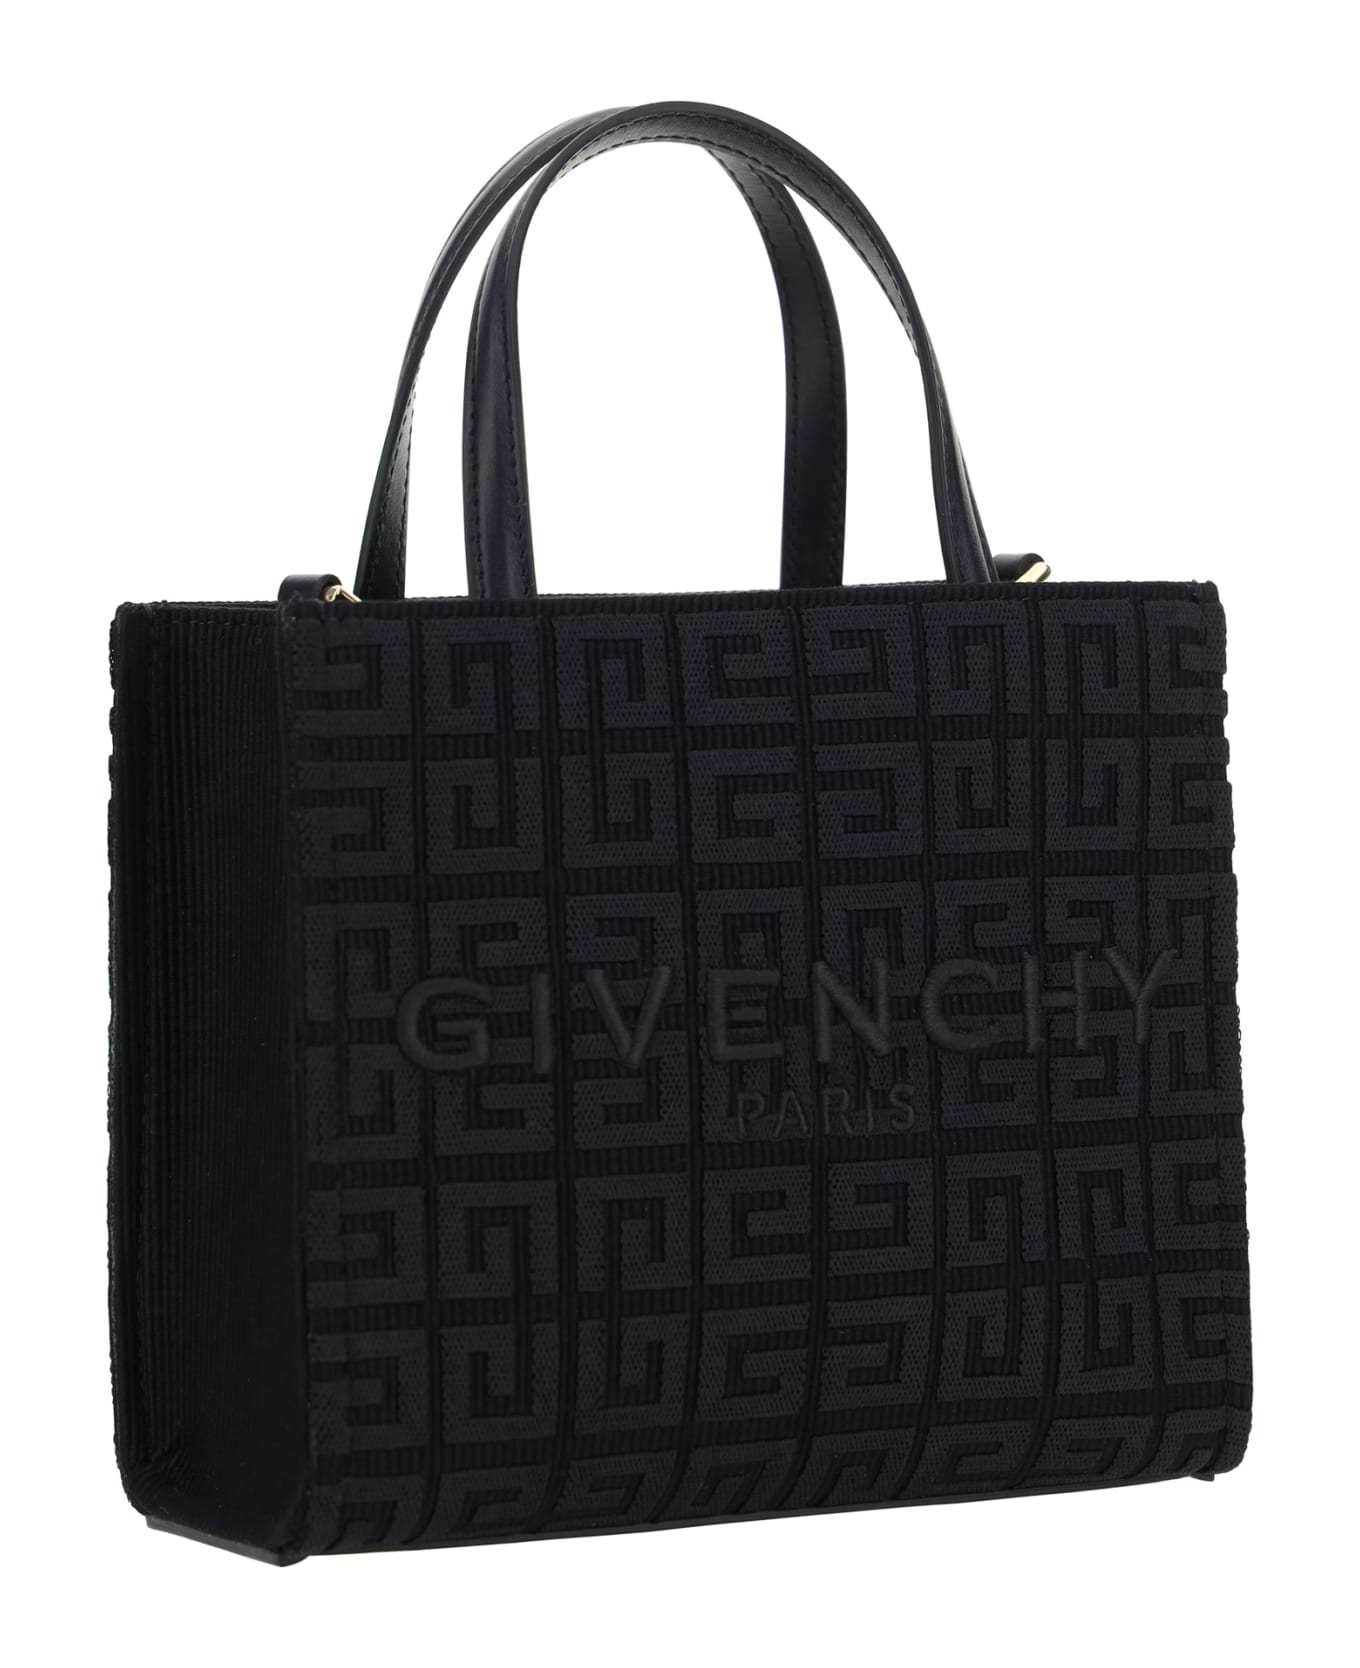 Givenchy G-tote Mini Handbag - Black トートバッグ